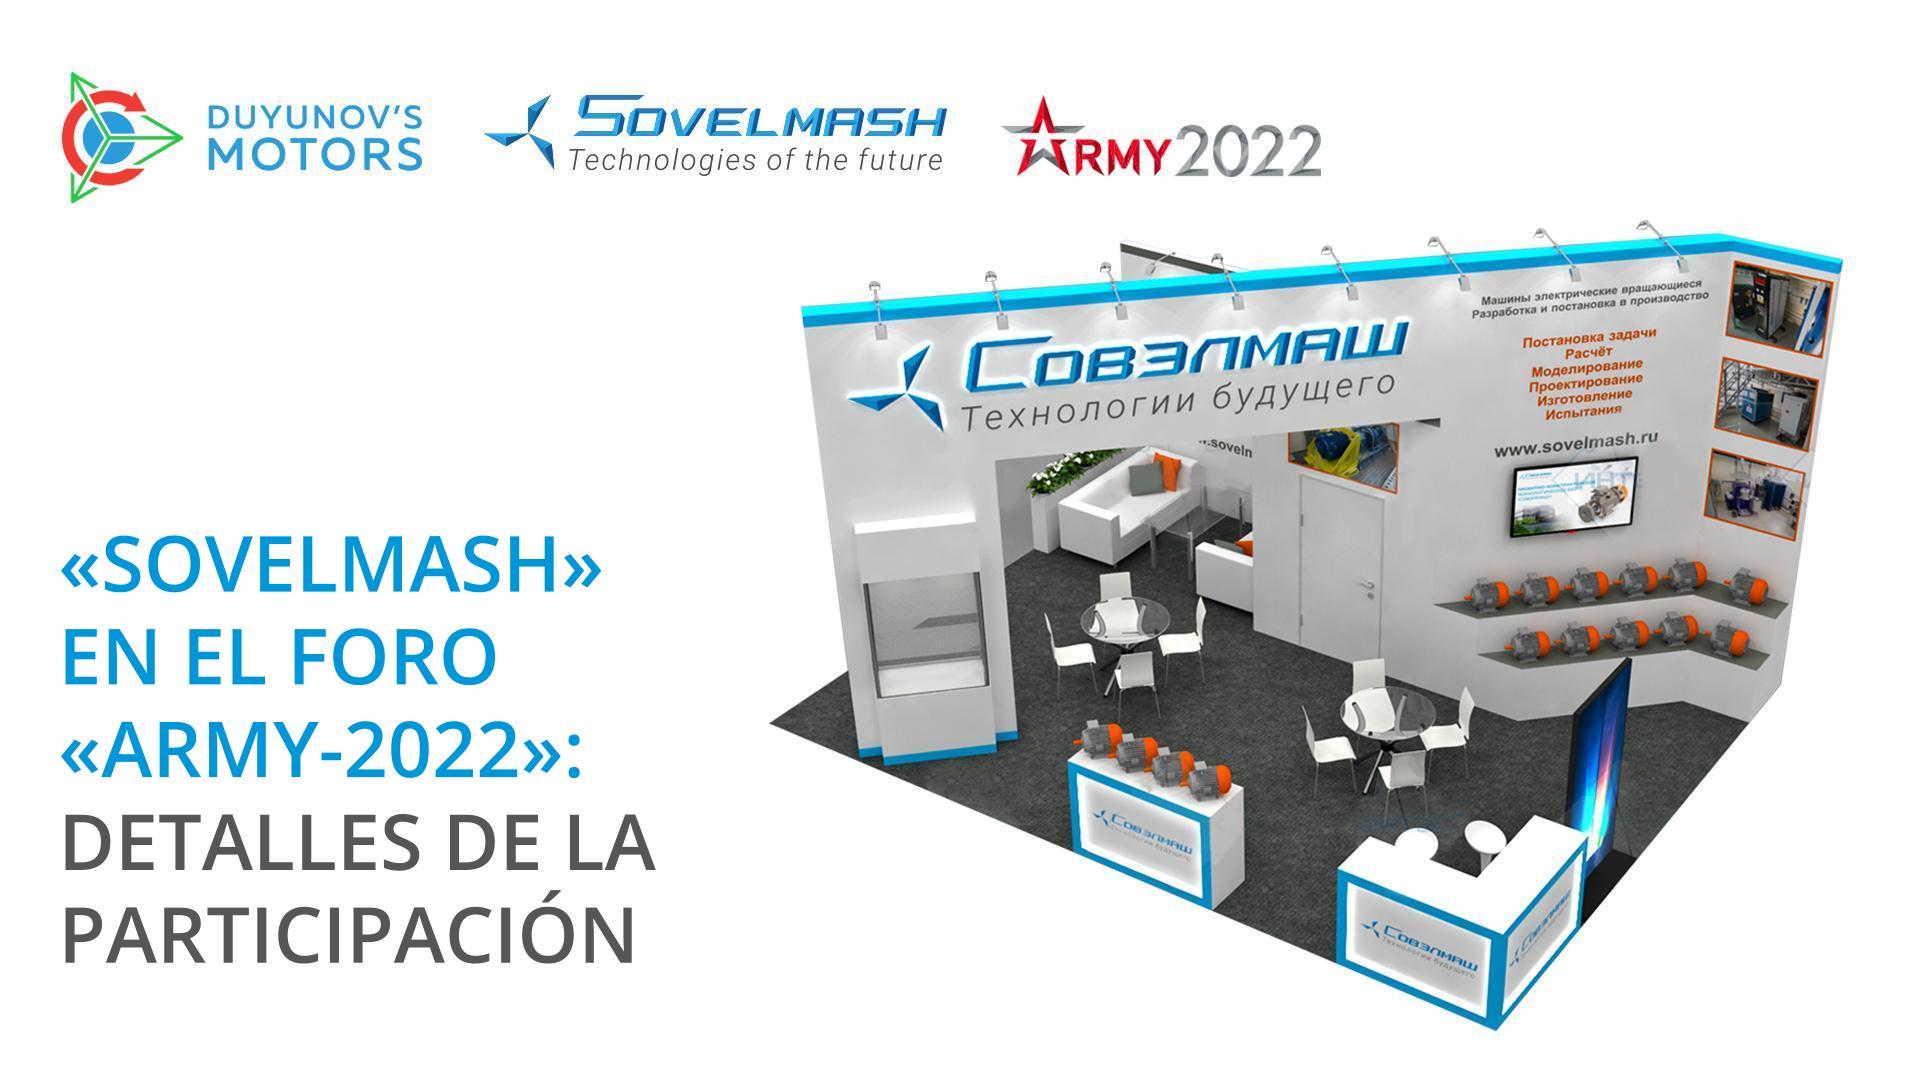 "Sovelmash" en el foro "Army-2022": detalles de la participación